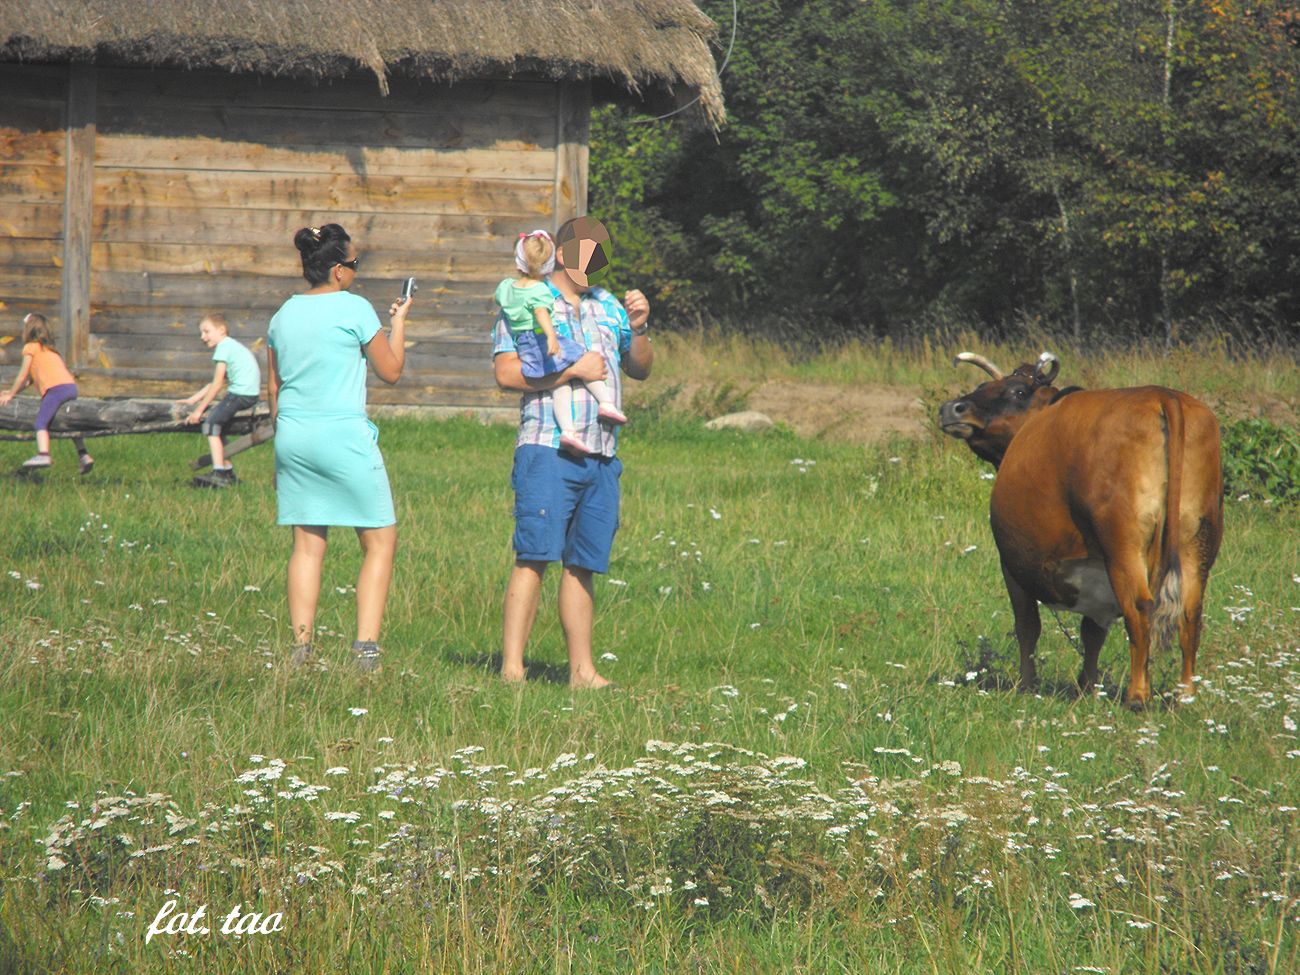 Niedziela w skansenie. Aż niemożliwe, ale prawdziwe - w skansenie jest krowa, która w aktorski sposób pozuje gościom do fotografii, 7.09.2014 r.